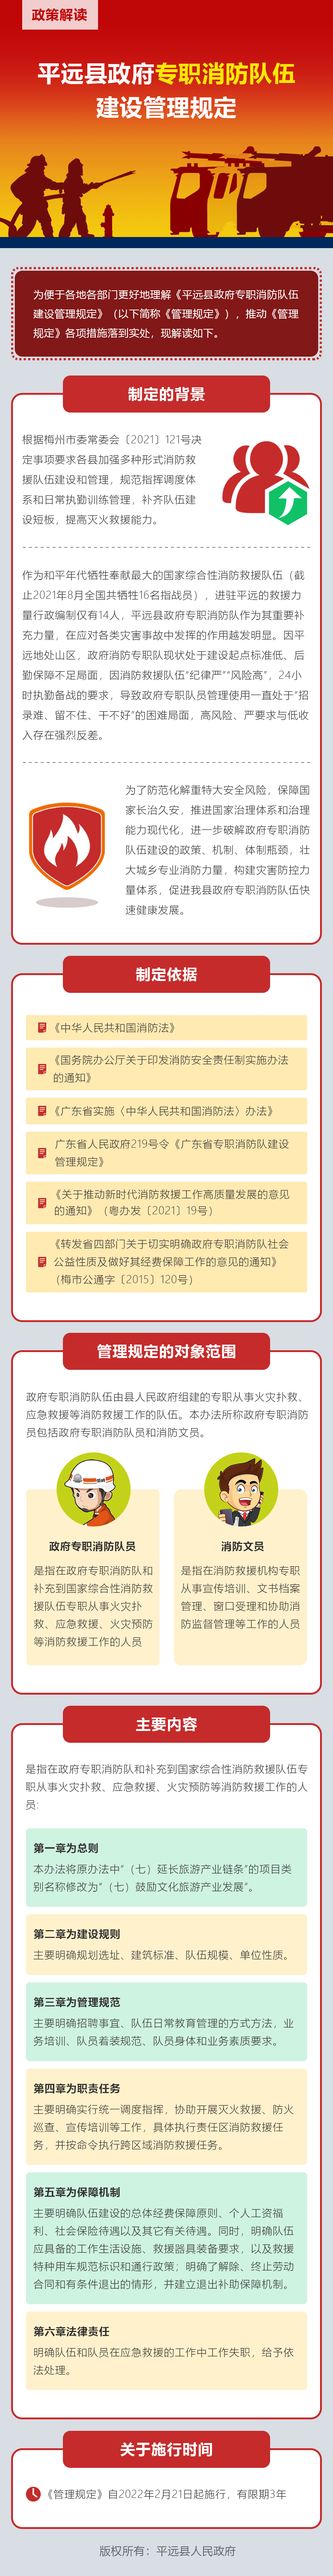 《平远县政府专职消防队伍建设管理规定》解读.png